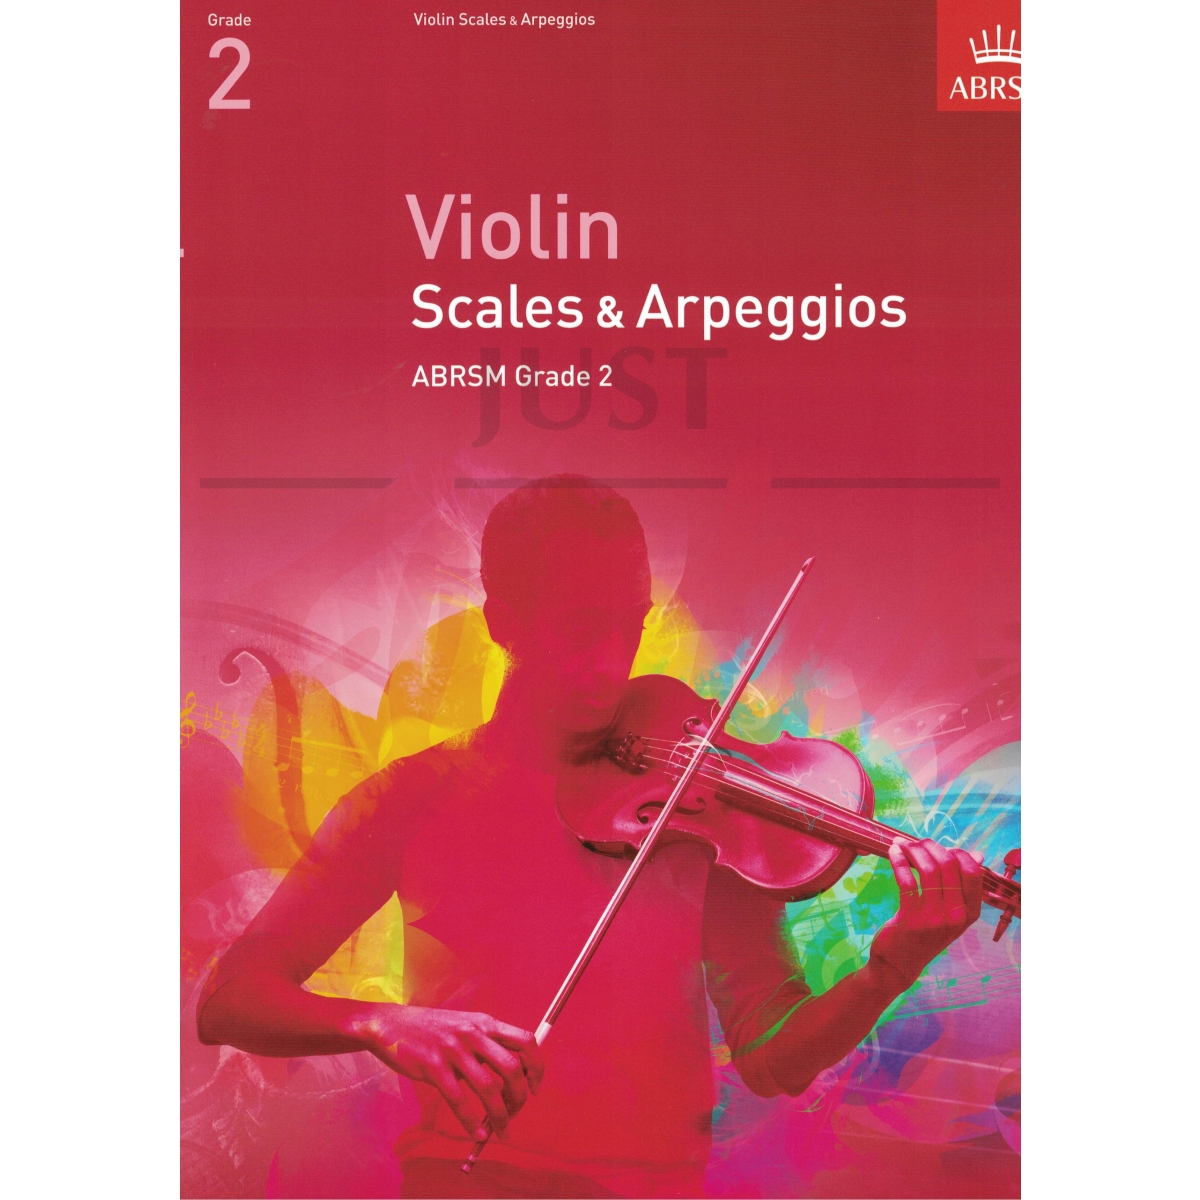 Scales and Arpeggios for Violin Grade 2